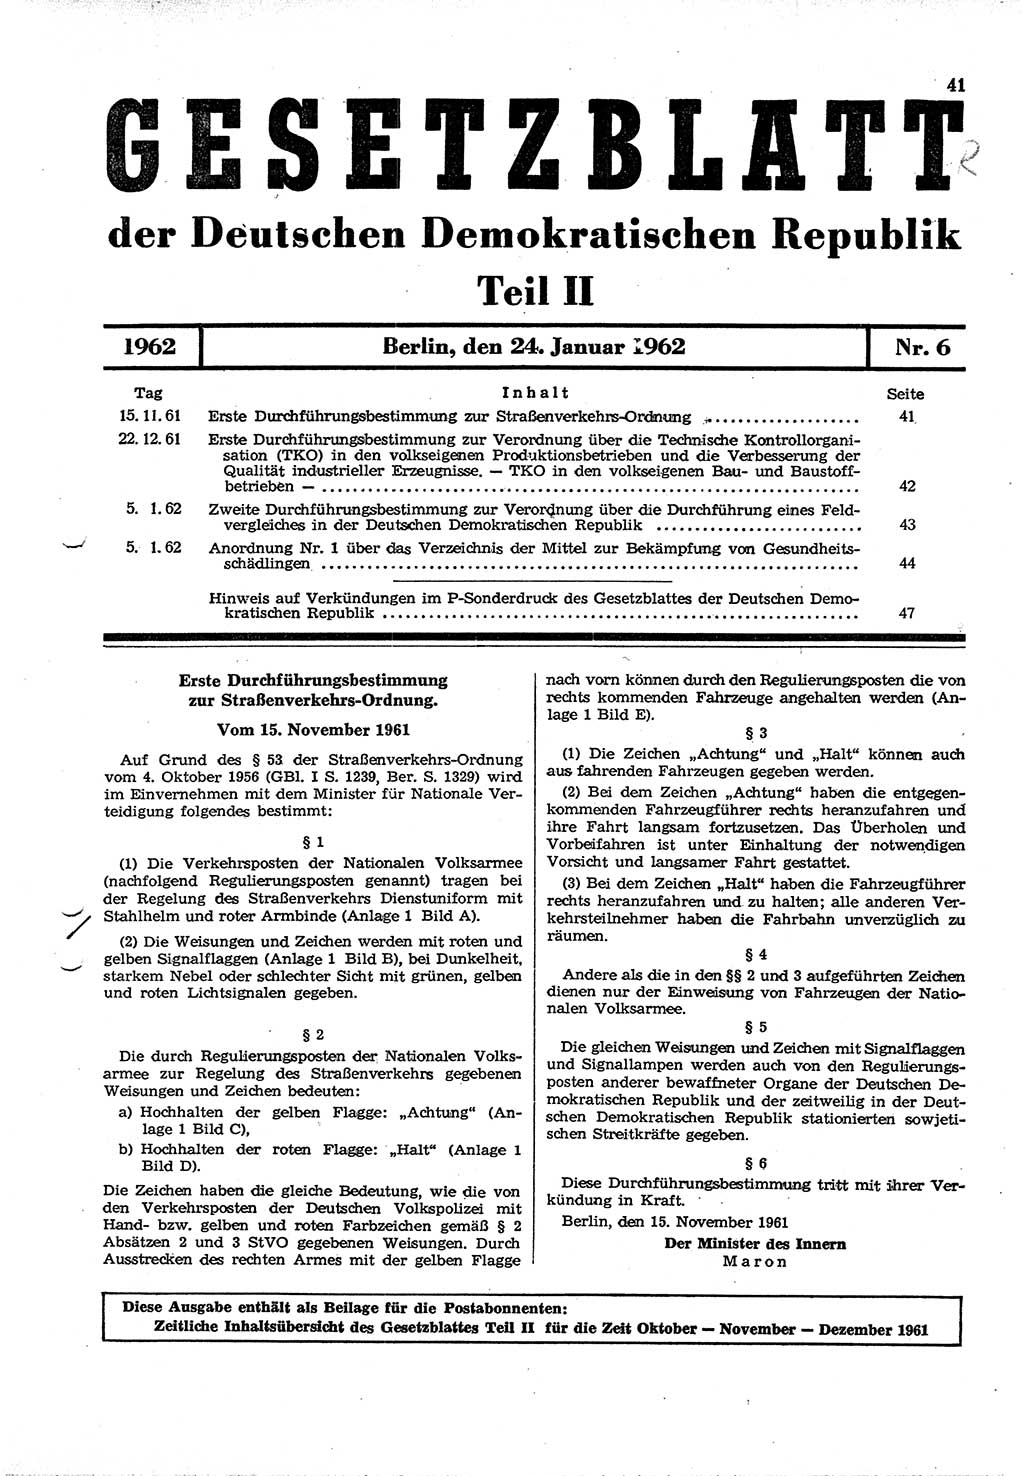 Gesetzblatt (GBl.) der Deutschen Demokratischen Republik (DDR) Teil ⅠⅠ 1962, Seite 41 (GBl. DDR ⅠⅠ 1962, S. 41)